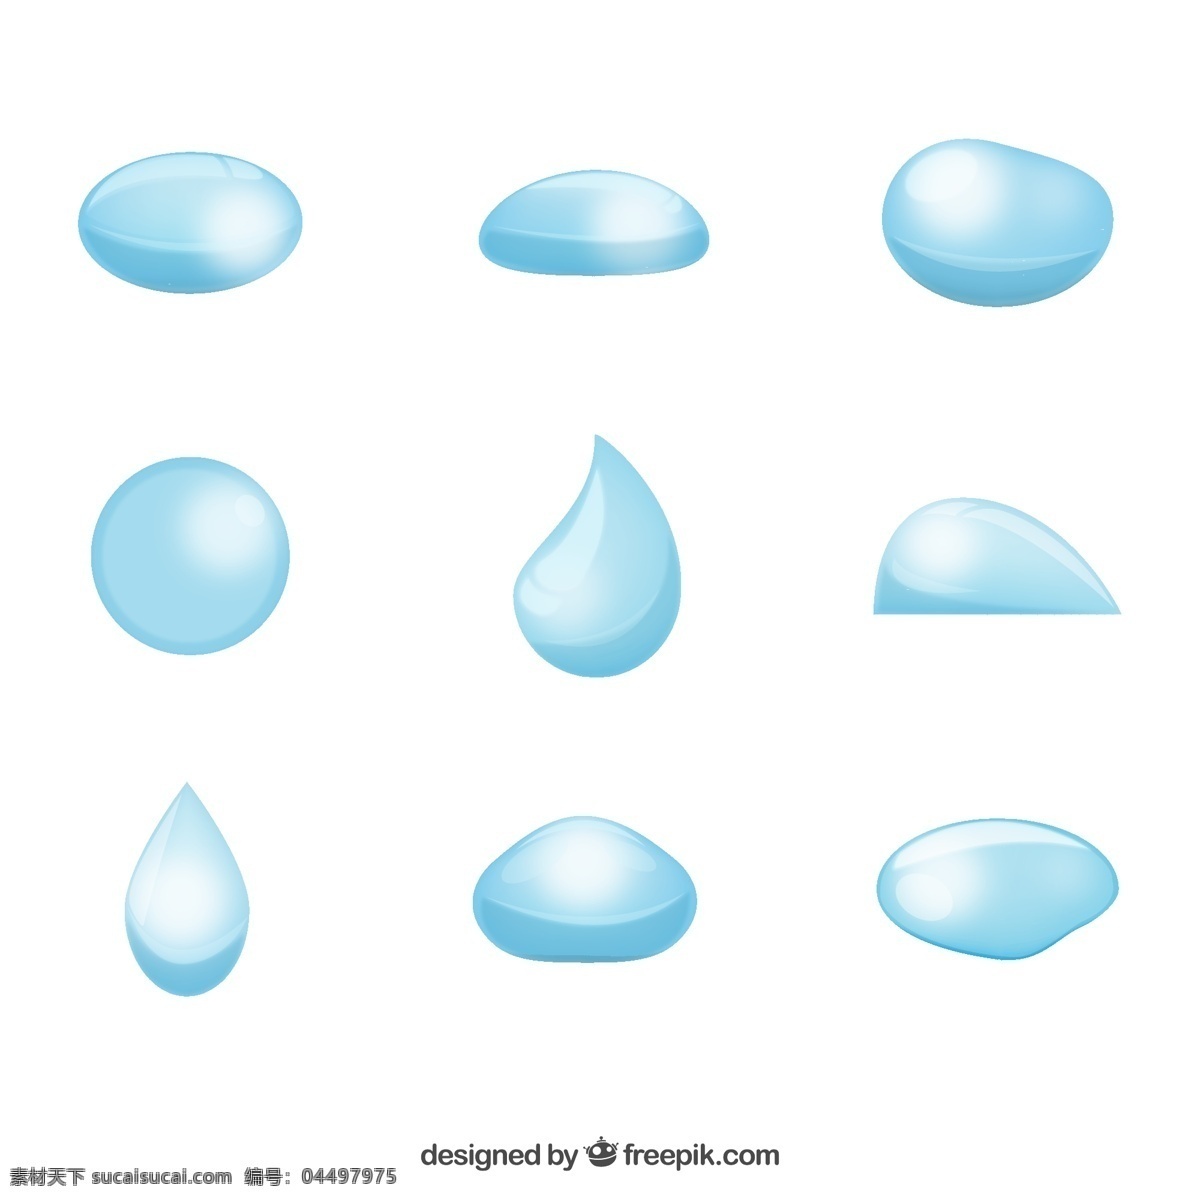 蓝色 水滴 矢量 雨滴 矢量图 格式 psd素材 高清图片